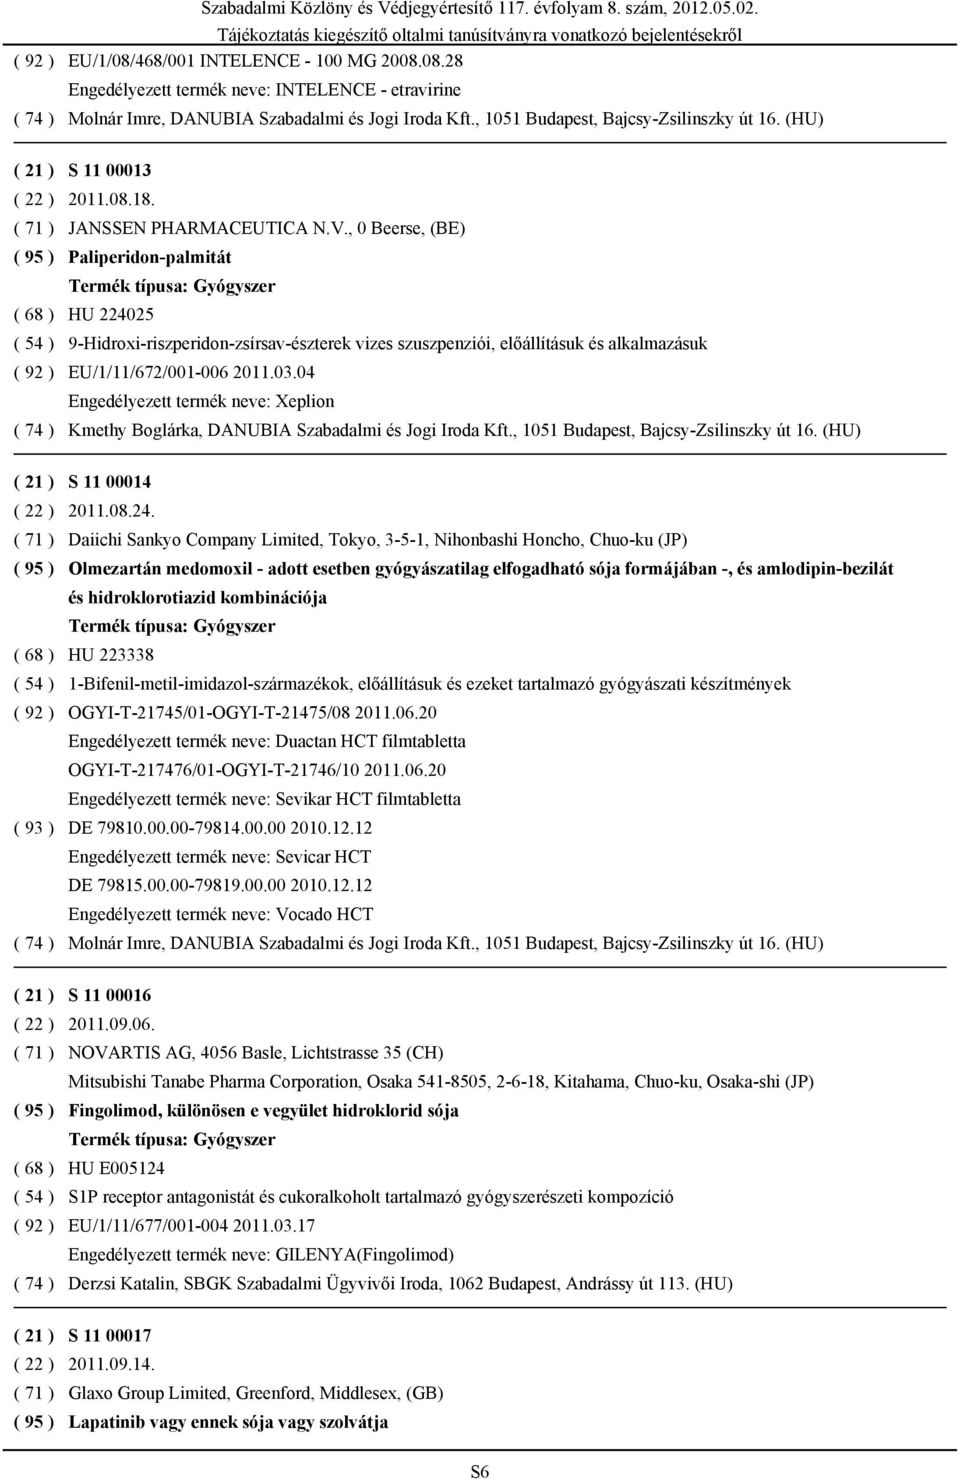 , 0 Beerse, (BE) Paliperidon-palmitát HU 224025 9-Hidroxi-riszperidon-zsírsav-észterek vizes szuszpenziói, előállításuk és alkalmazásuk EU/1/11/672/001-006 2011.03.